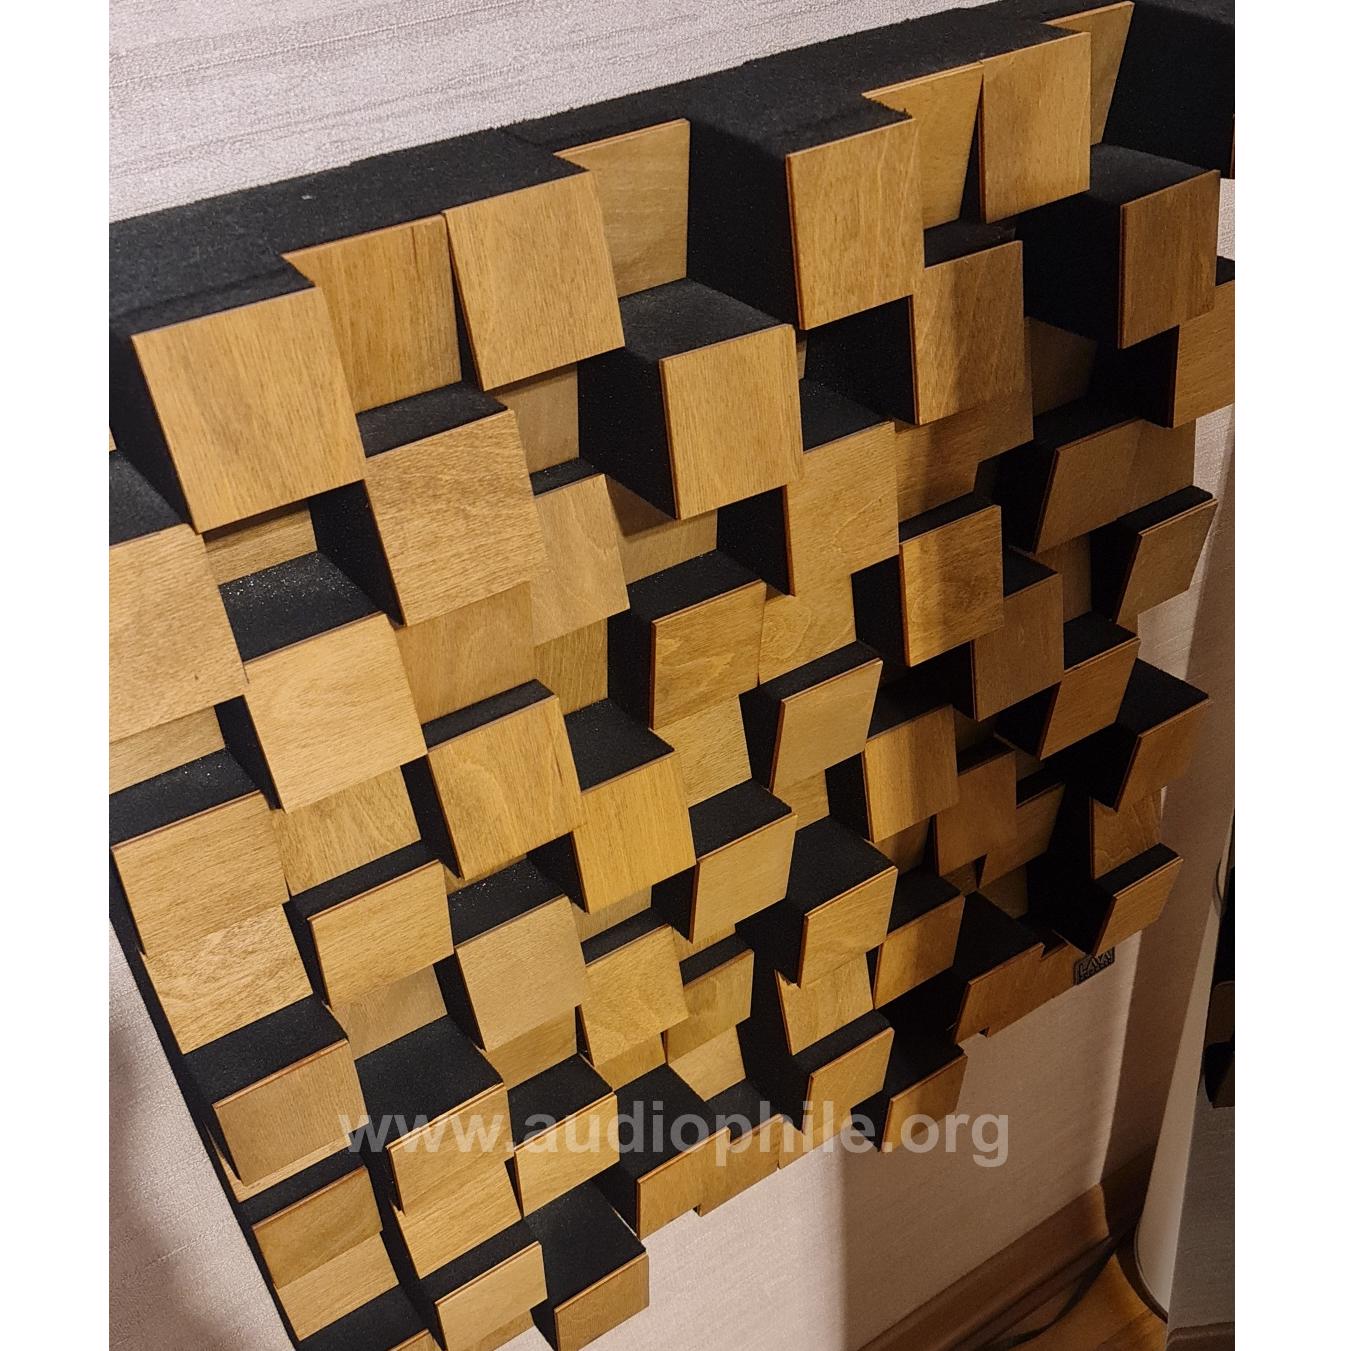 Lava akusitik mozaik difüzör akustik panel